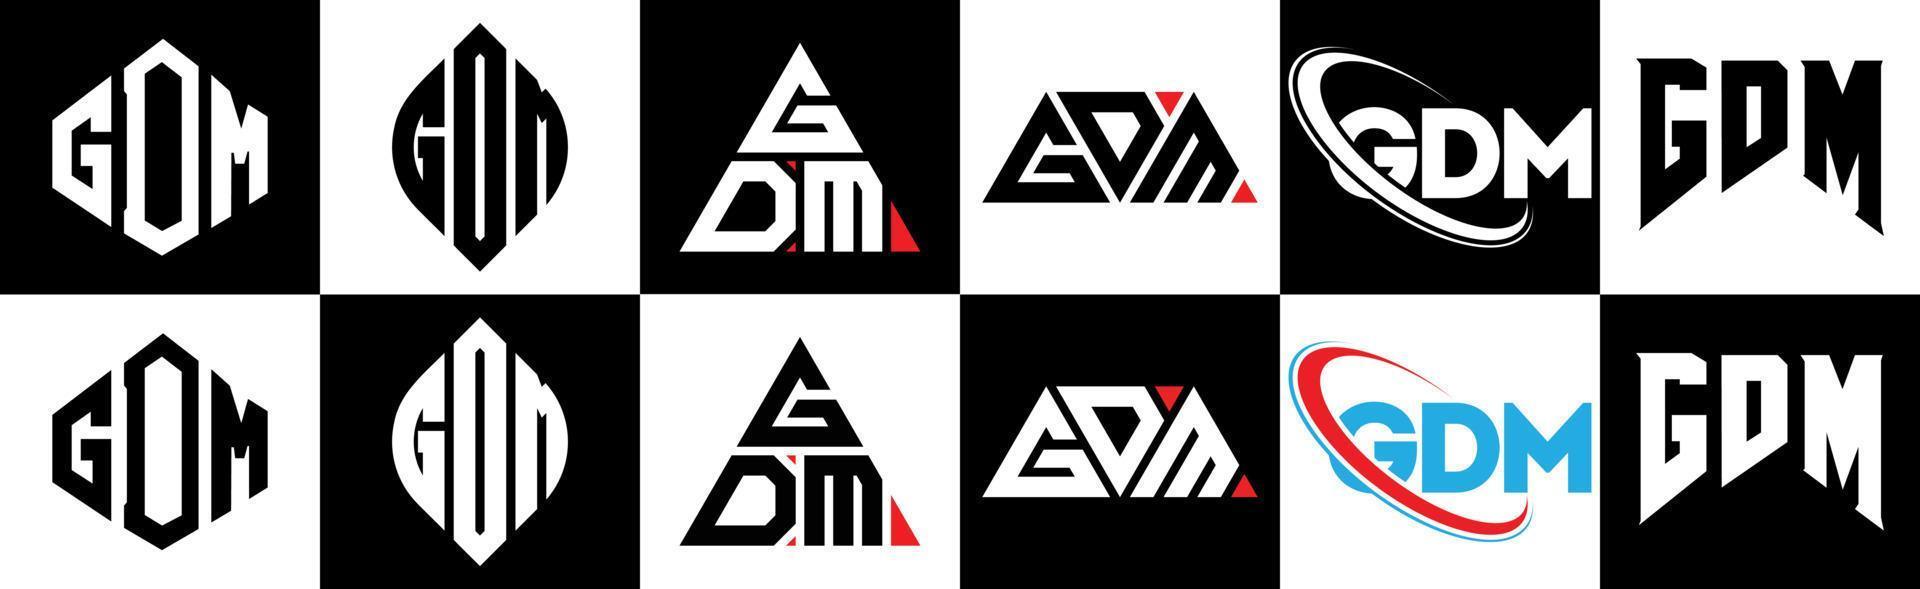 création de logo de lettre gdm en six styles. polygone gdm, cercle, triangle, hexagone, style plat et simple avec logo de lettre de variation de couleur noir et blanc dans un plan de travail. logo gdm minimaliste et classique vecteur